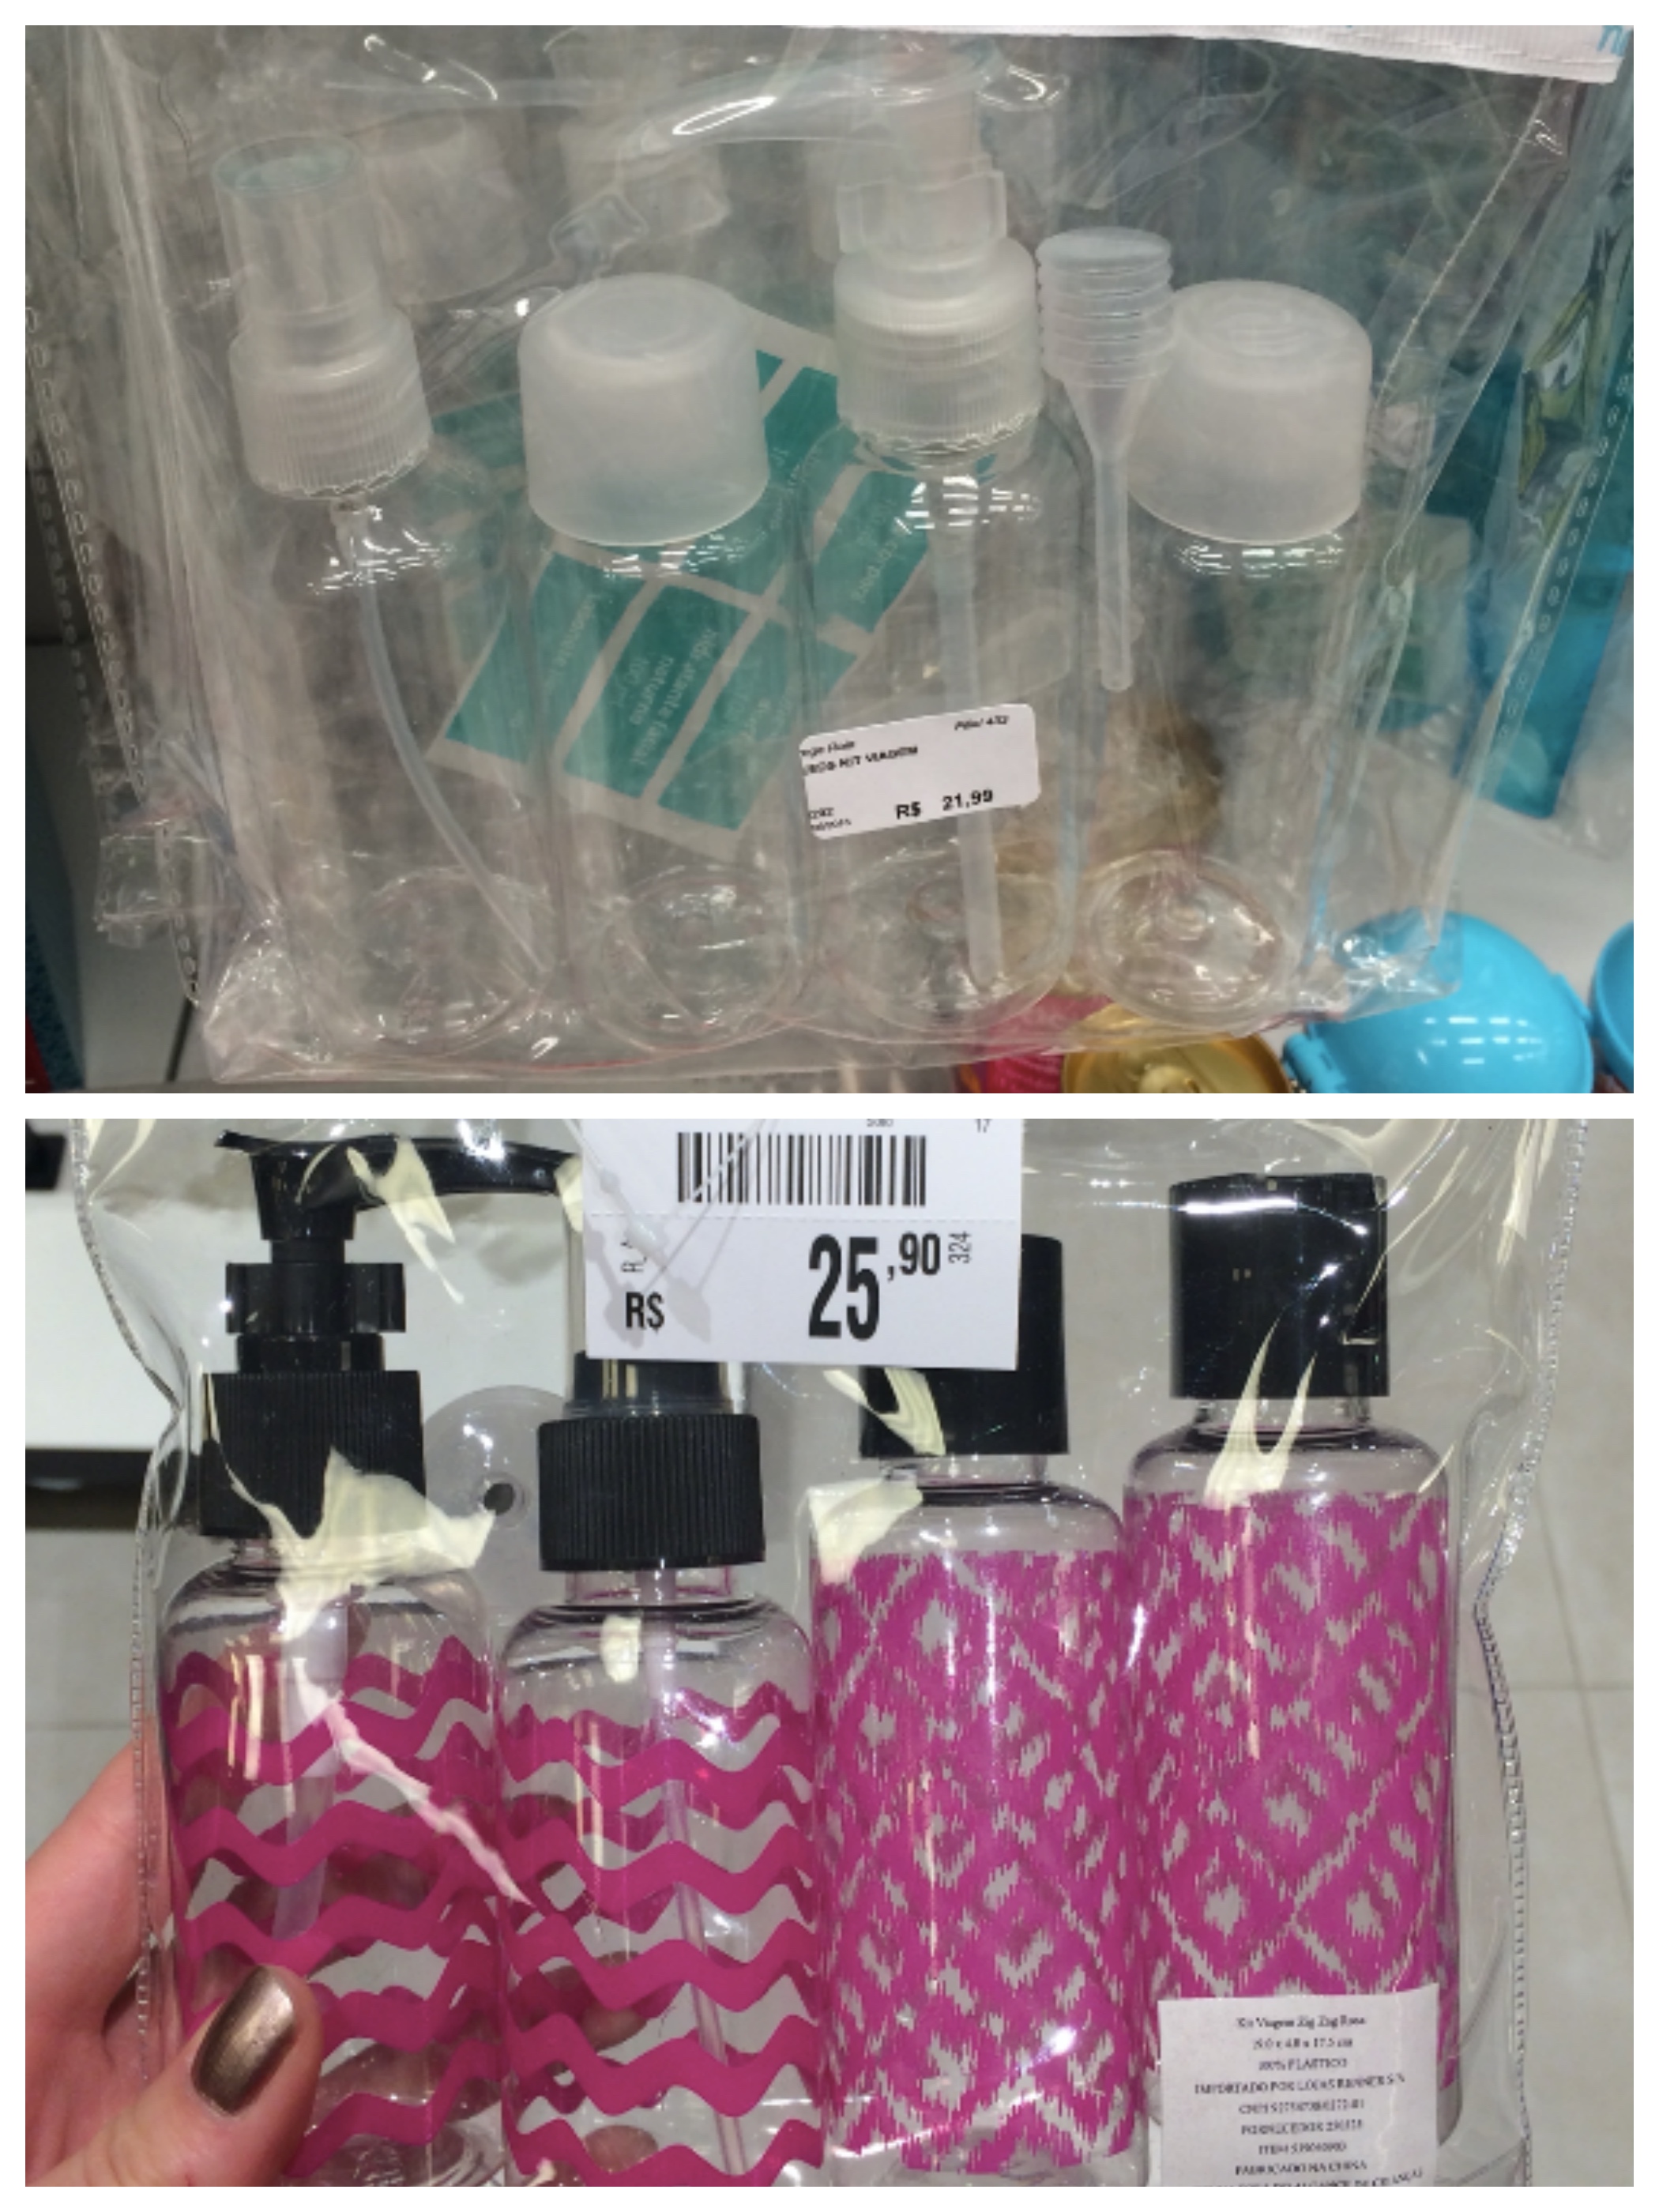 Achei esses kits para colocar shampoo, condicionador etc. Eu uso um e quebra muito galho. O de cima é da Droga Raia (R$21,90) e o de baixo da Riachuello (R$25,90).